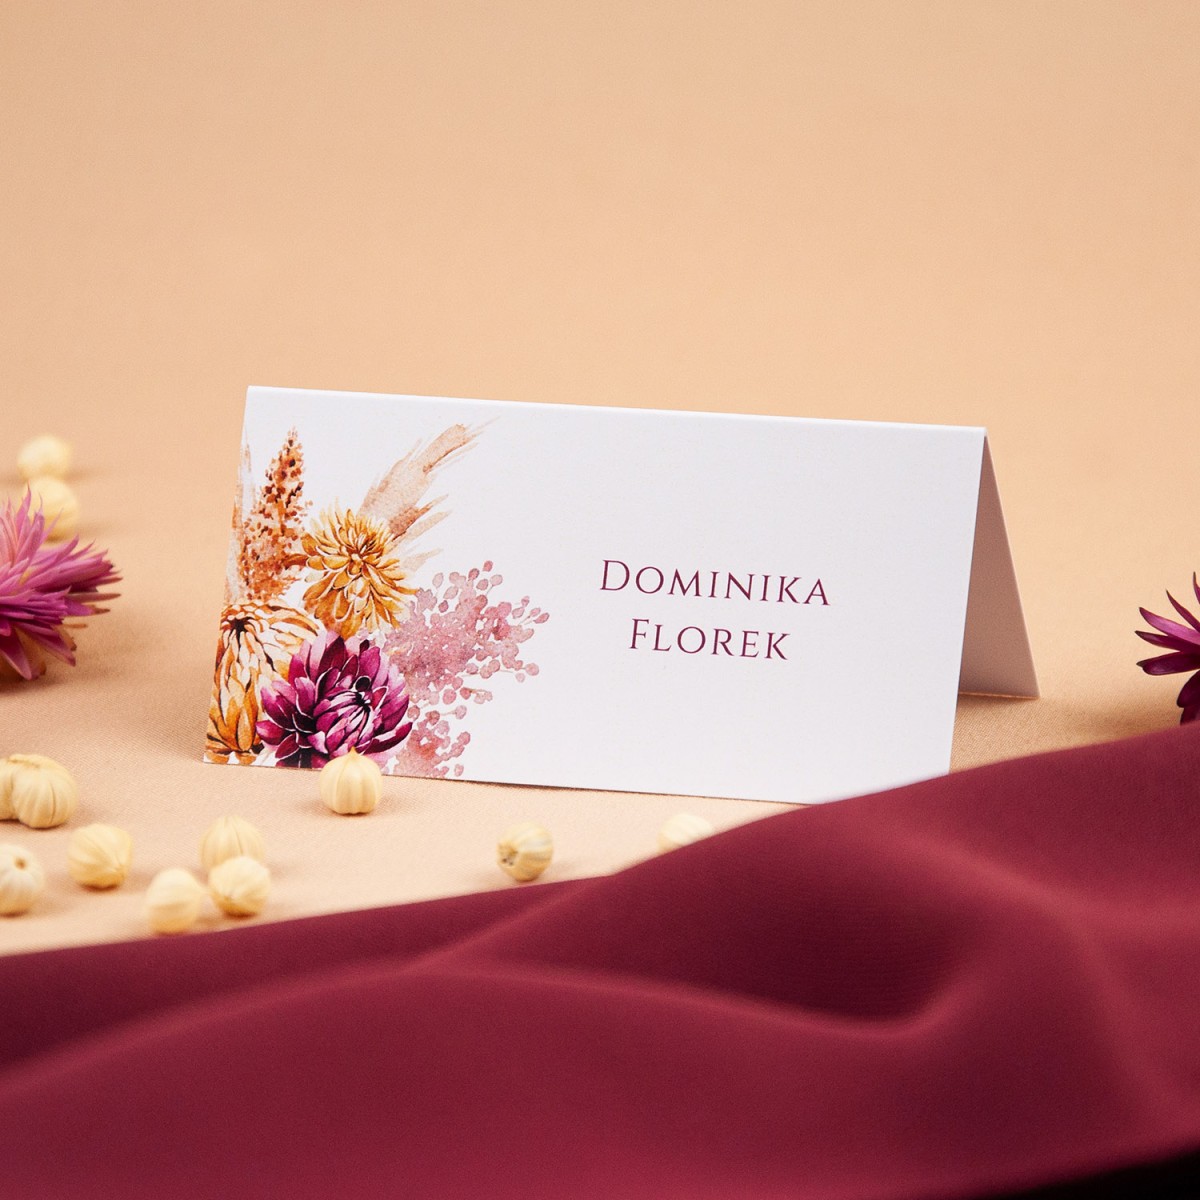 Winietki na stoły weselne z motywem suszonych kwiatów - Sunset, Dry Leaves - PRÓBKA